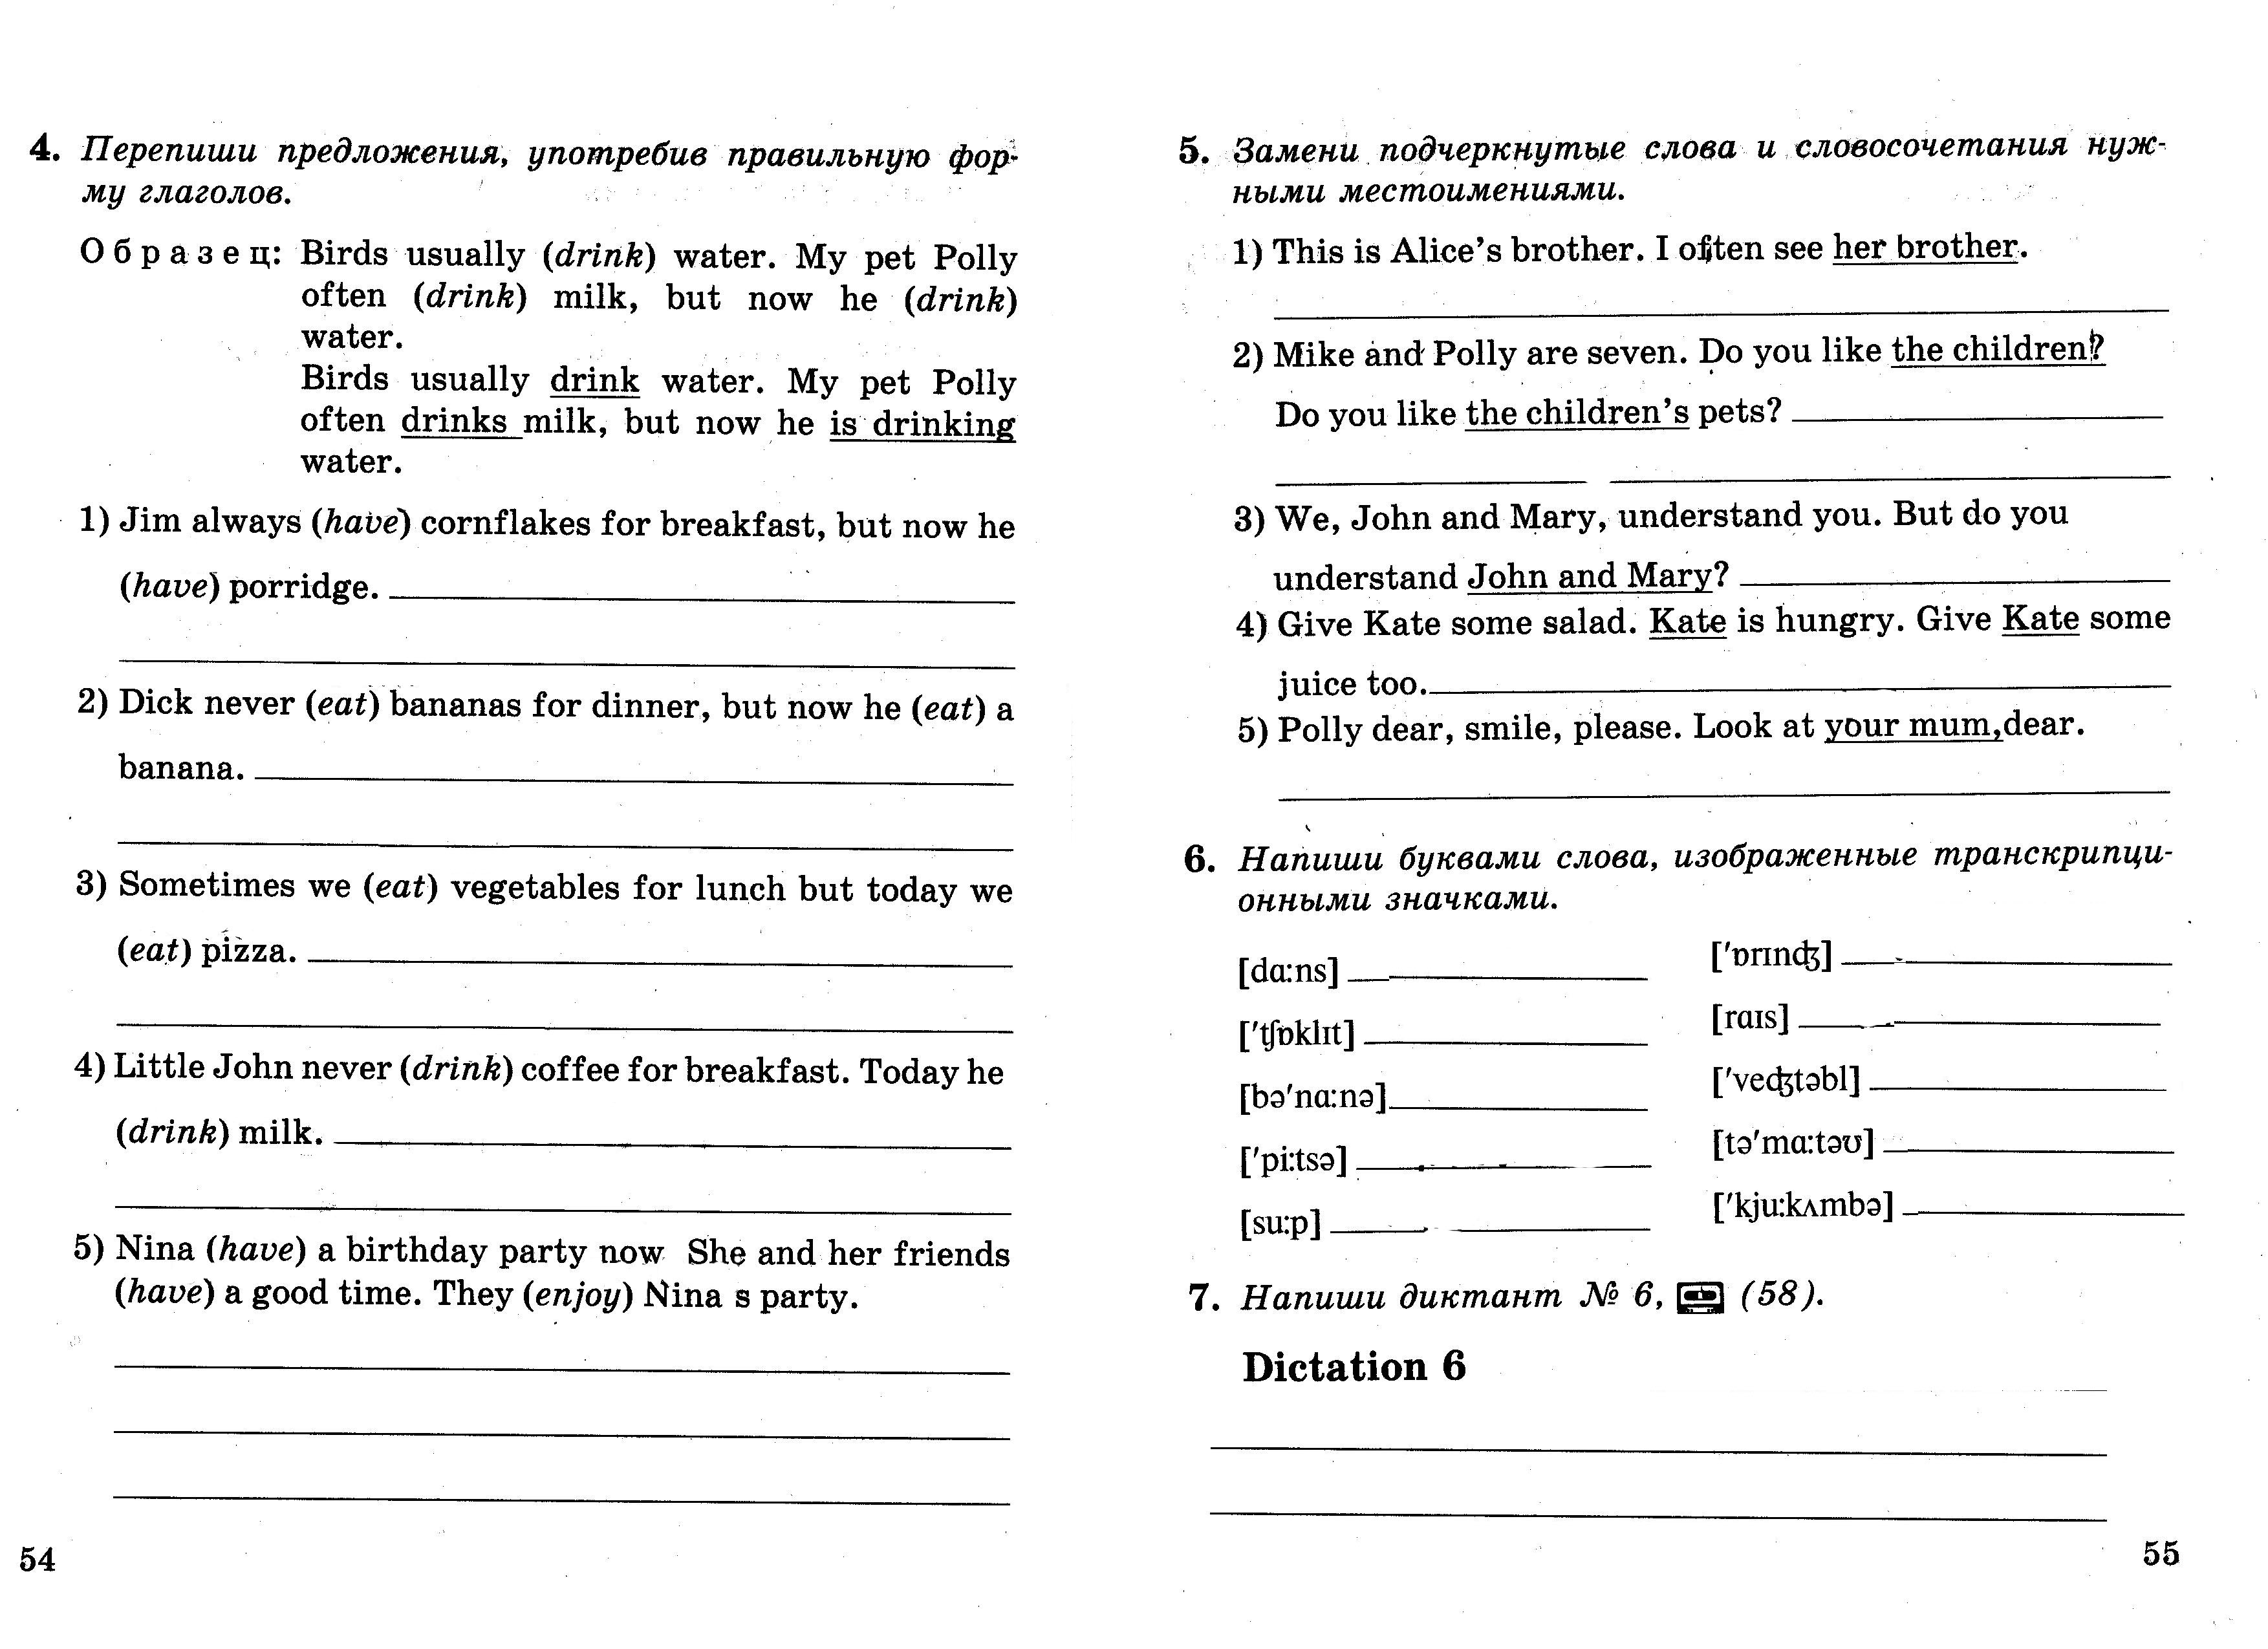 Рабочая программа по английскому языку для Российских школ, 6 класс, 2-й год обучения